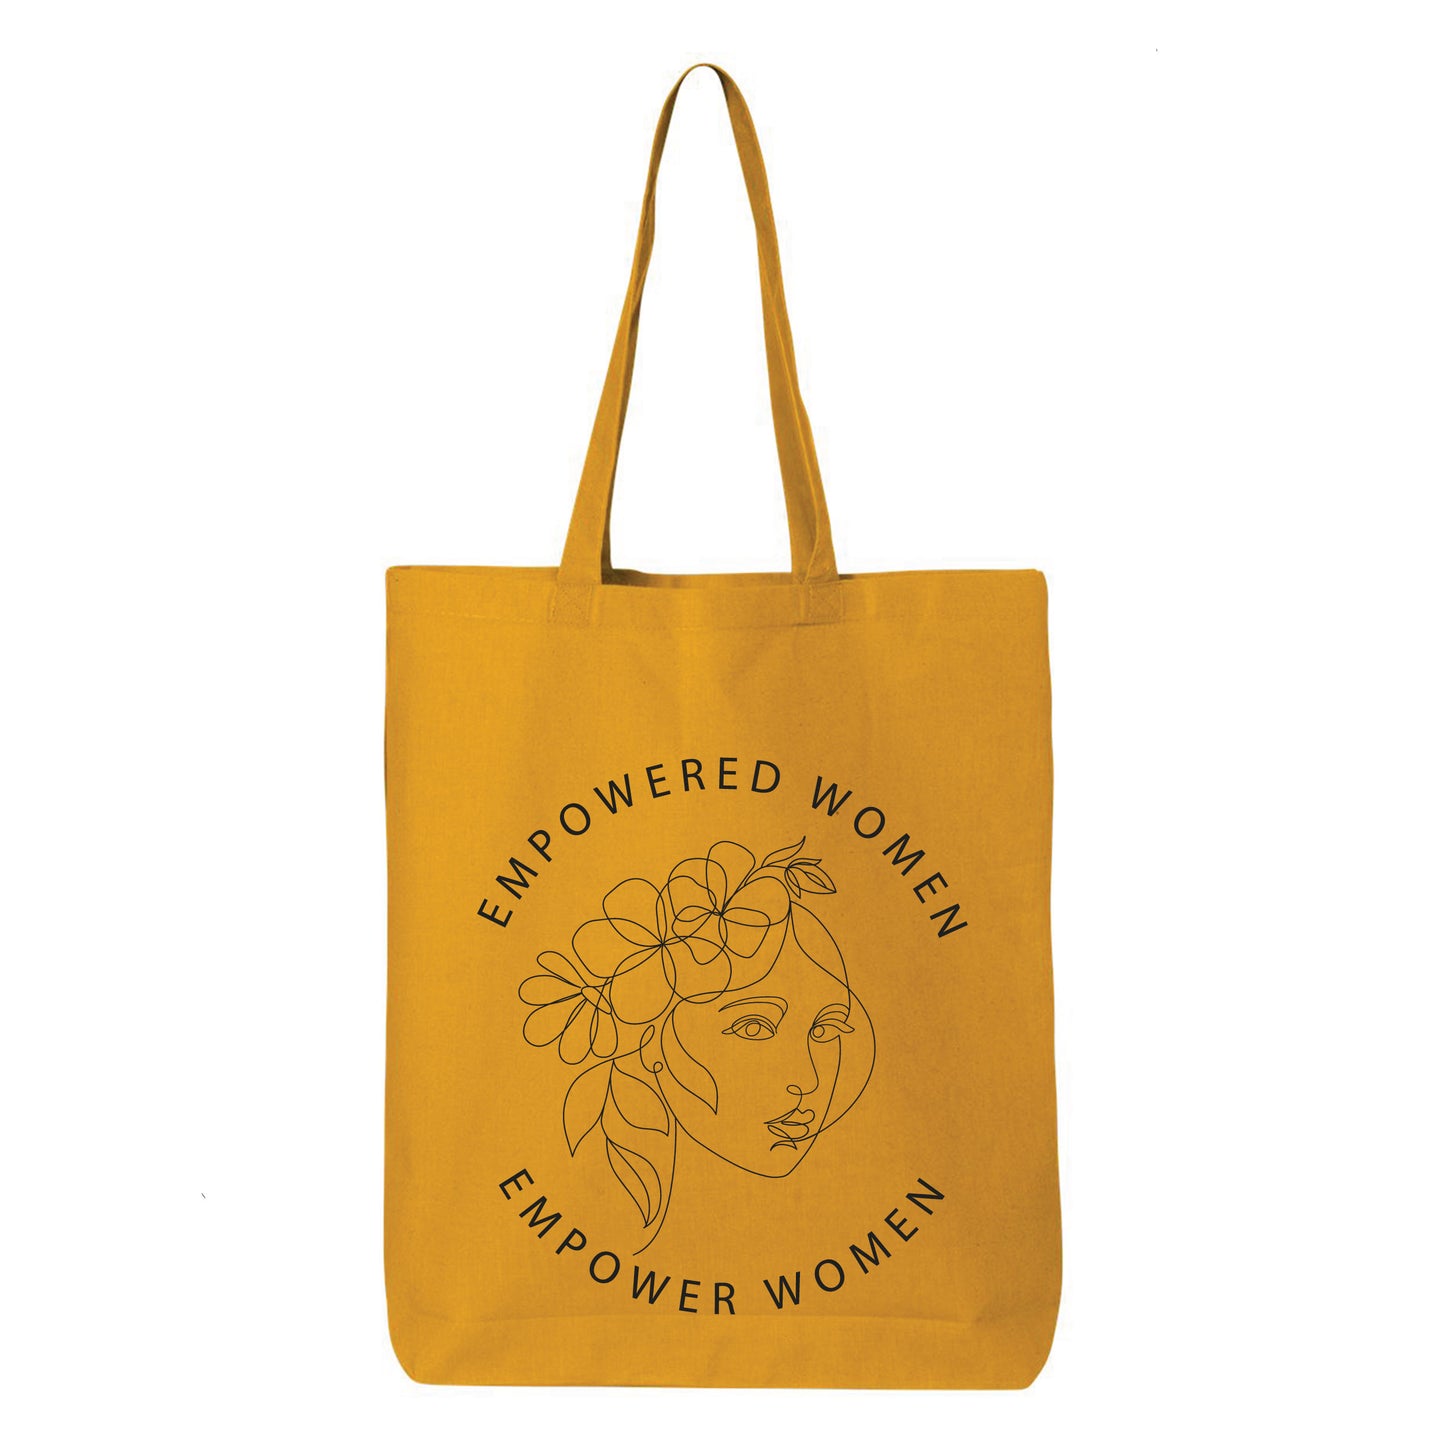 
                  
                    Empowered Women Empower Women Tote Bag
                  
                